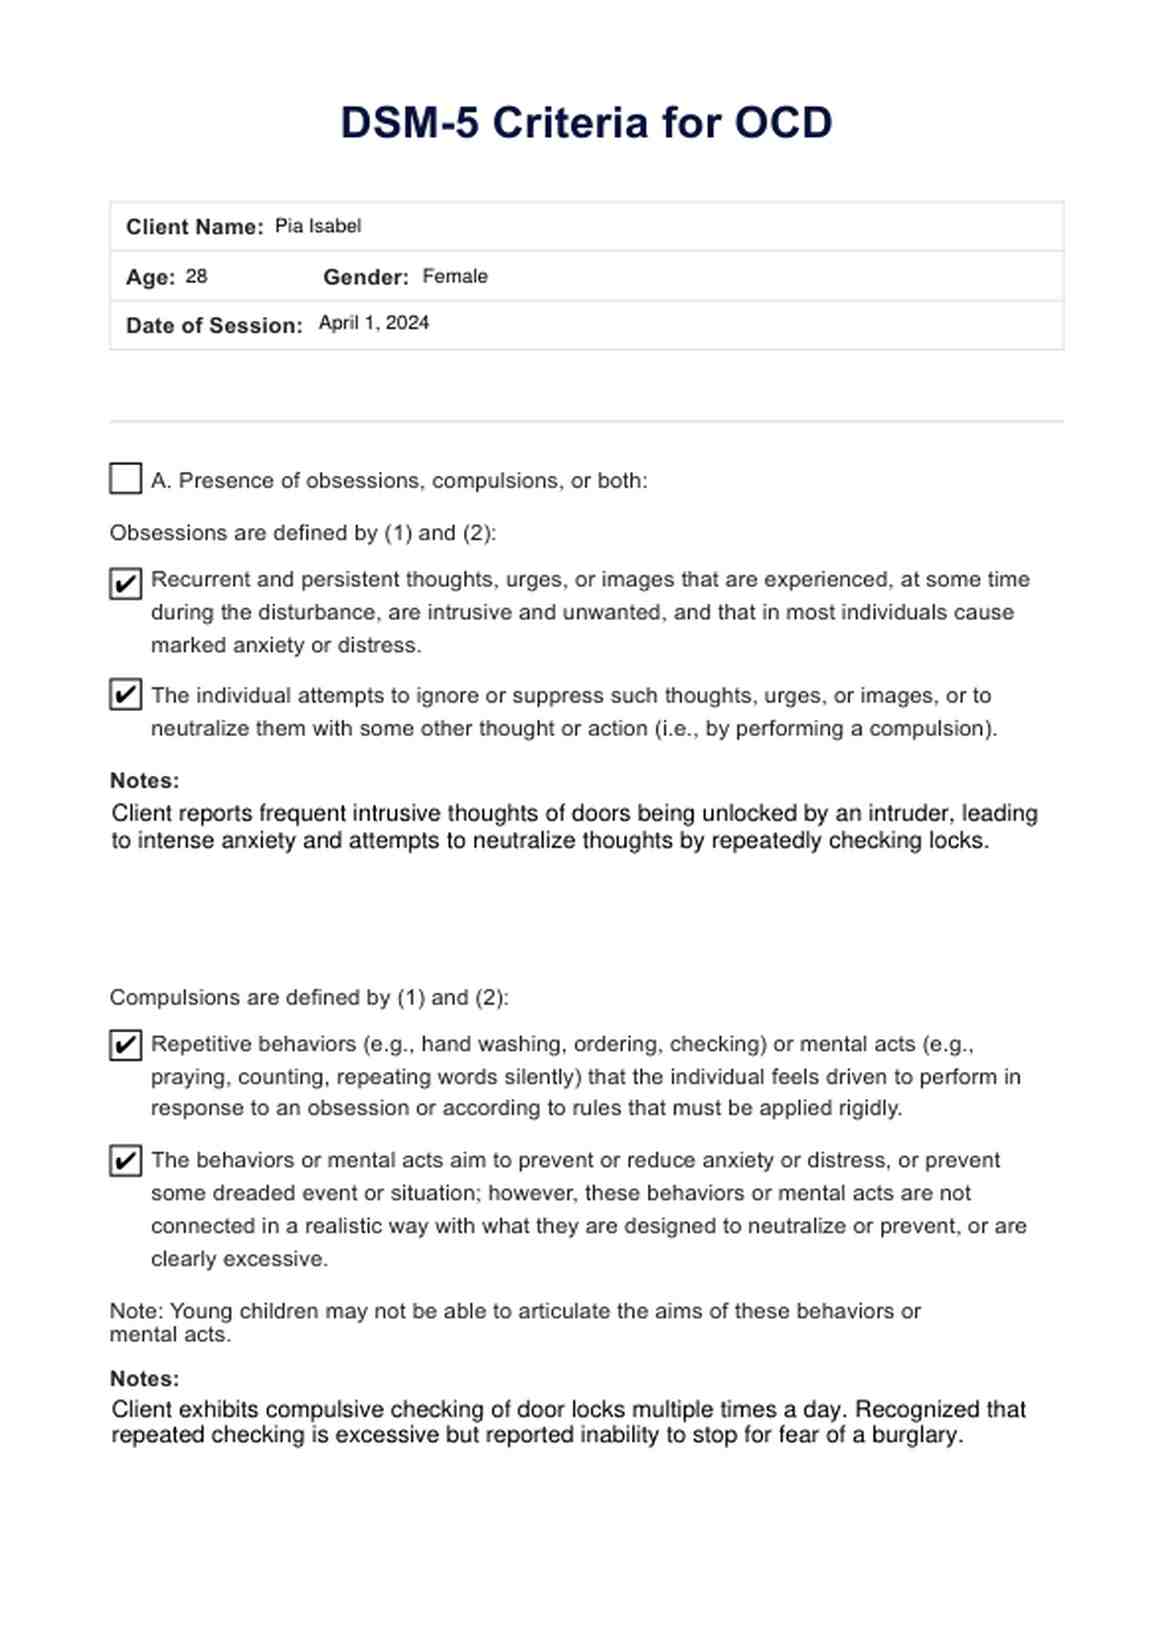 DSM 5 Criteria for OCD PDF Example